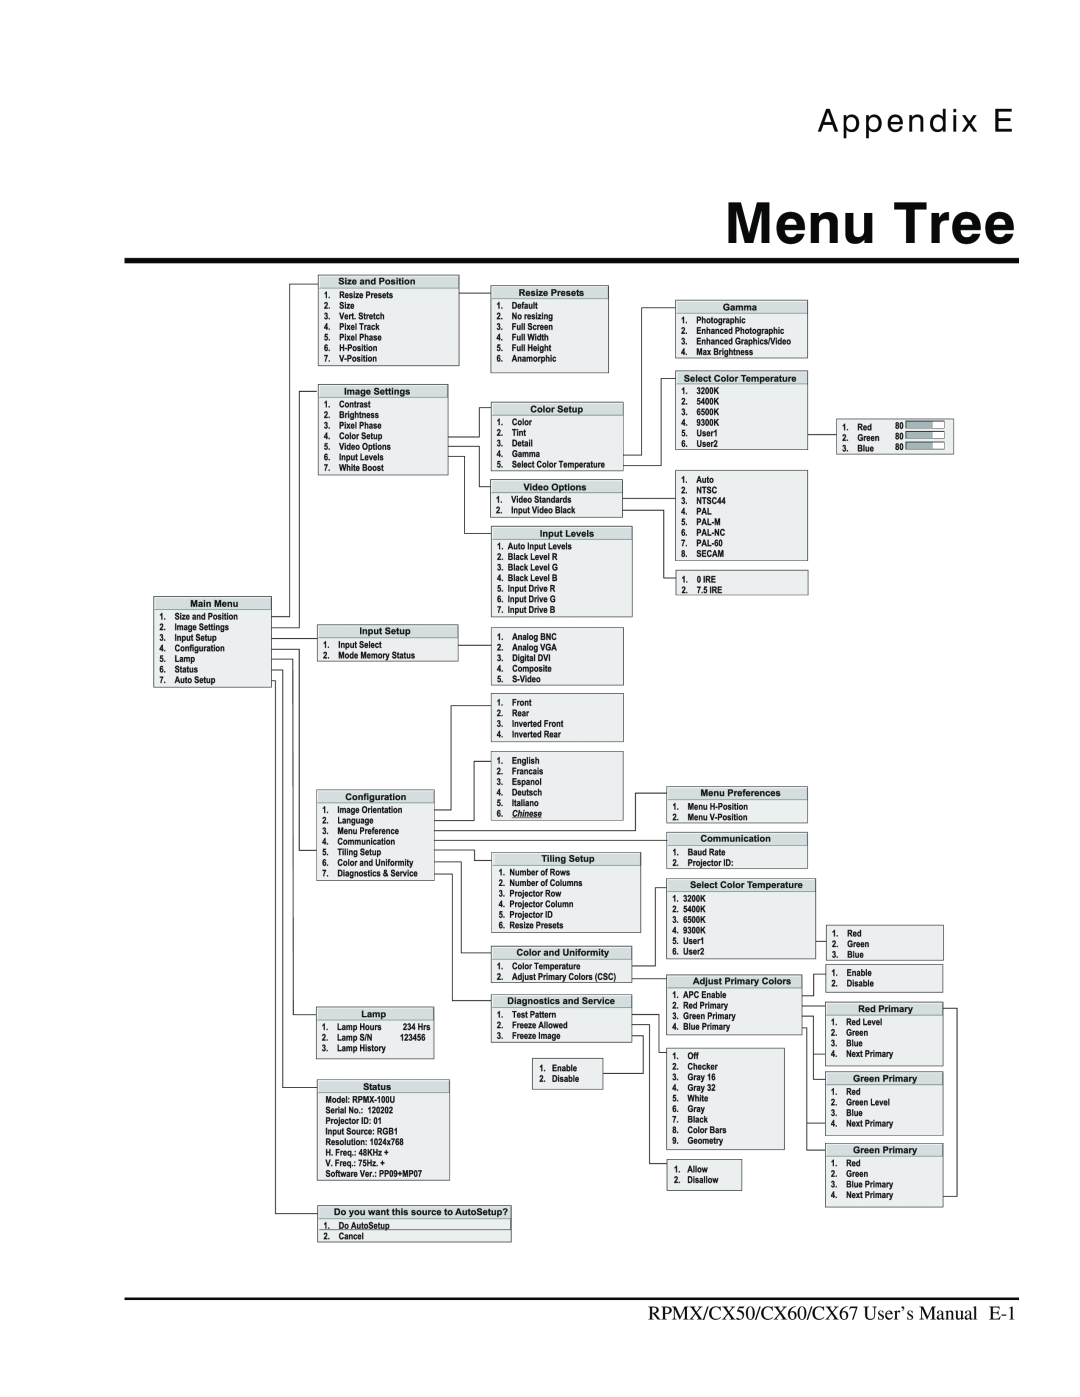 Christie Digital Systems CX67, CX50, CX60 user manual Menu Tree, Appendix E 